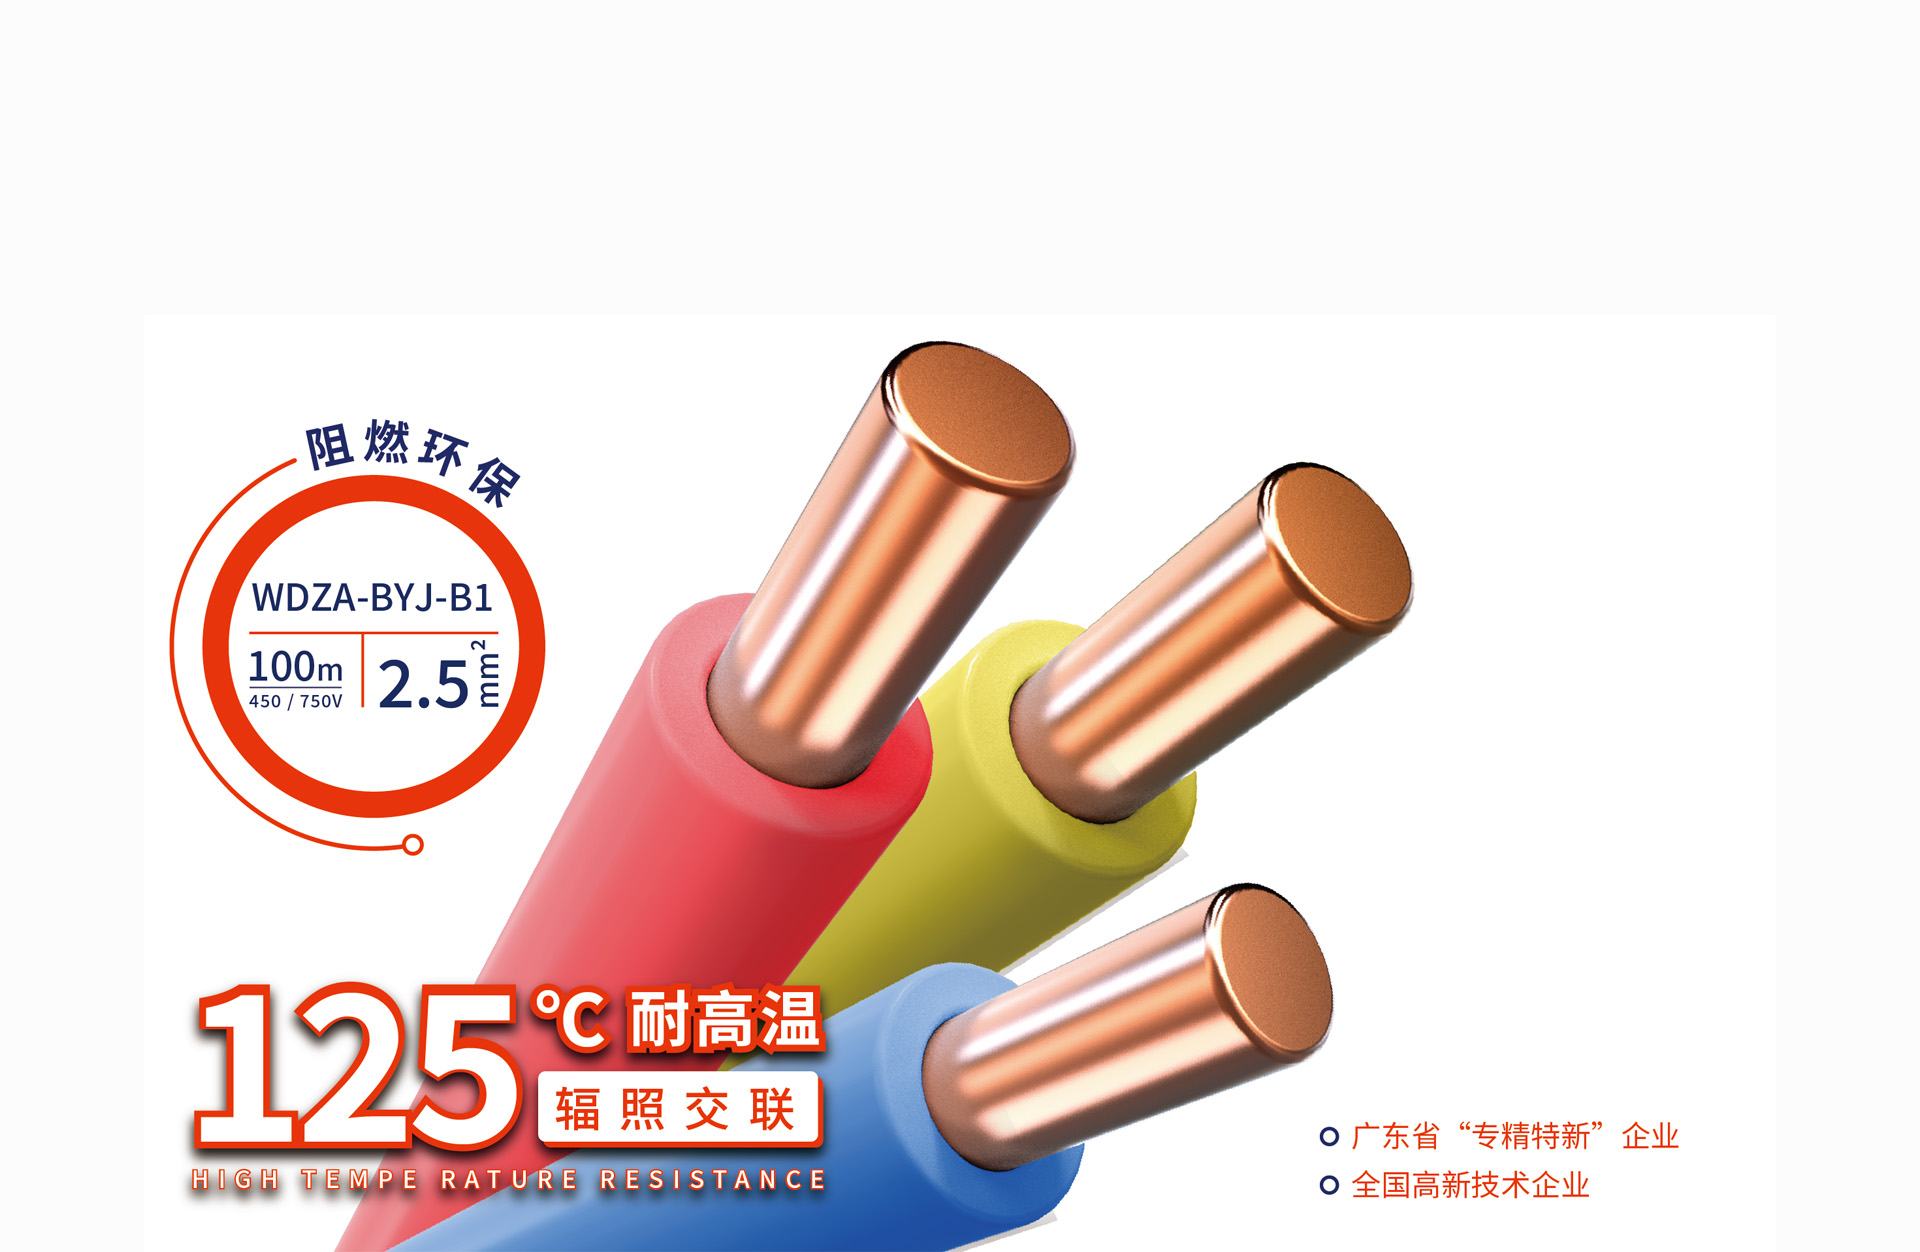 线缆行业年度大会 - 中国电线电缆网